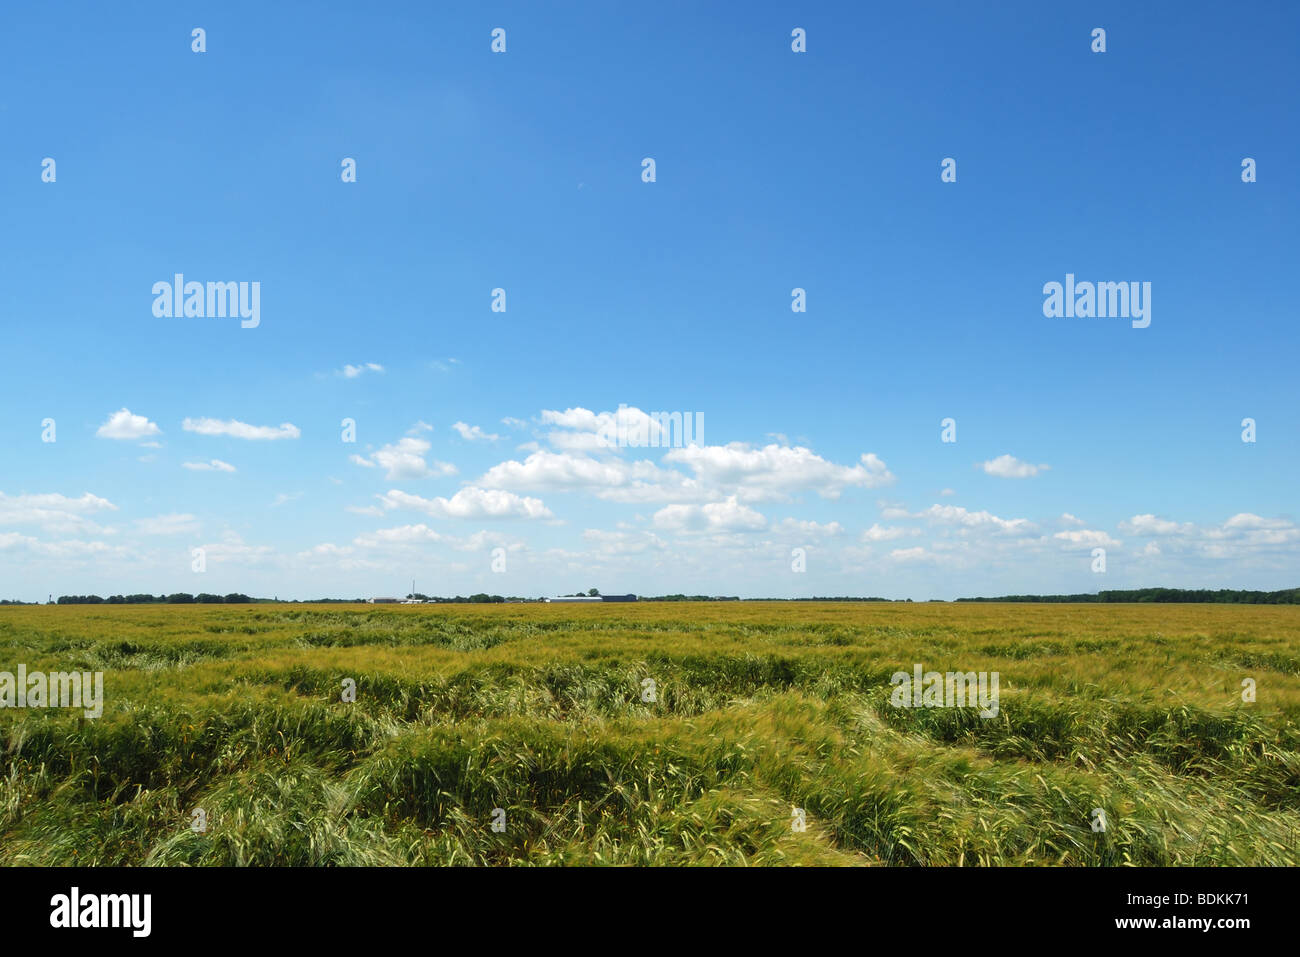 Green campo di grano con spikelets mettere giù con vento contro il cielo estivo blu Foto Stock